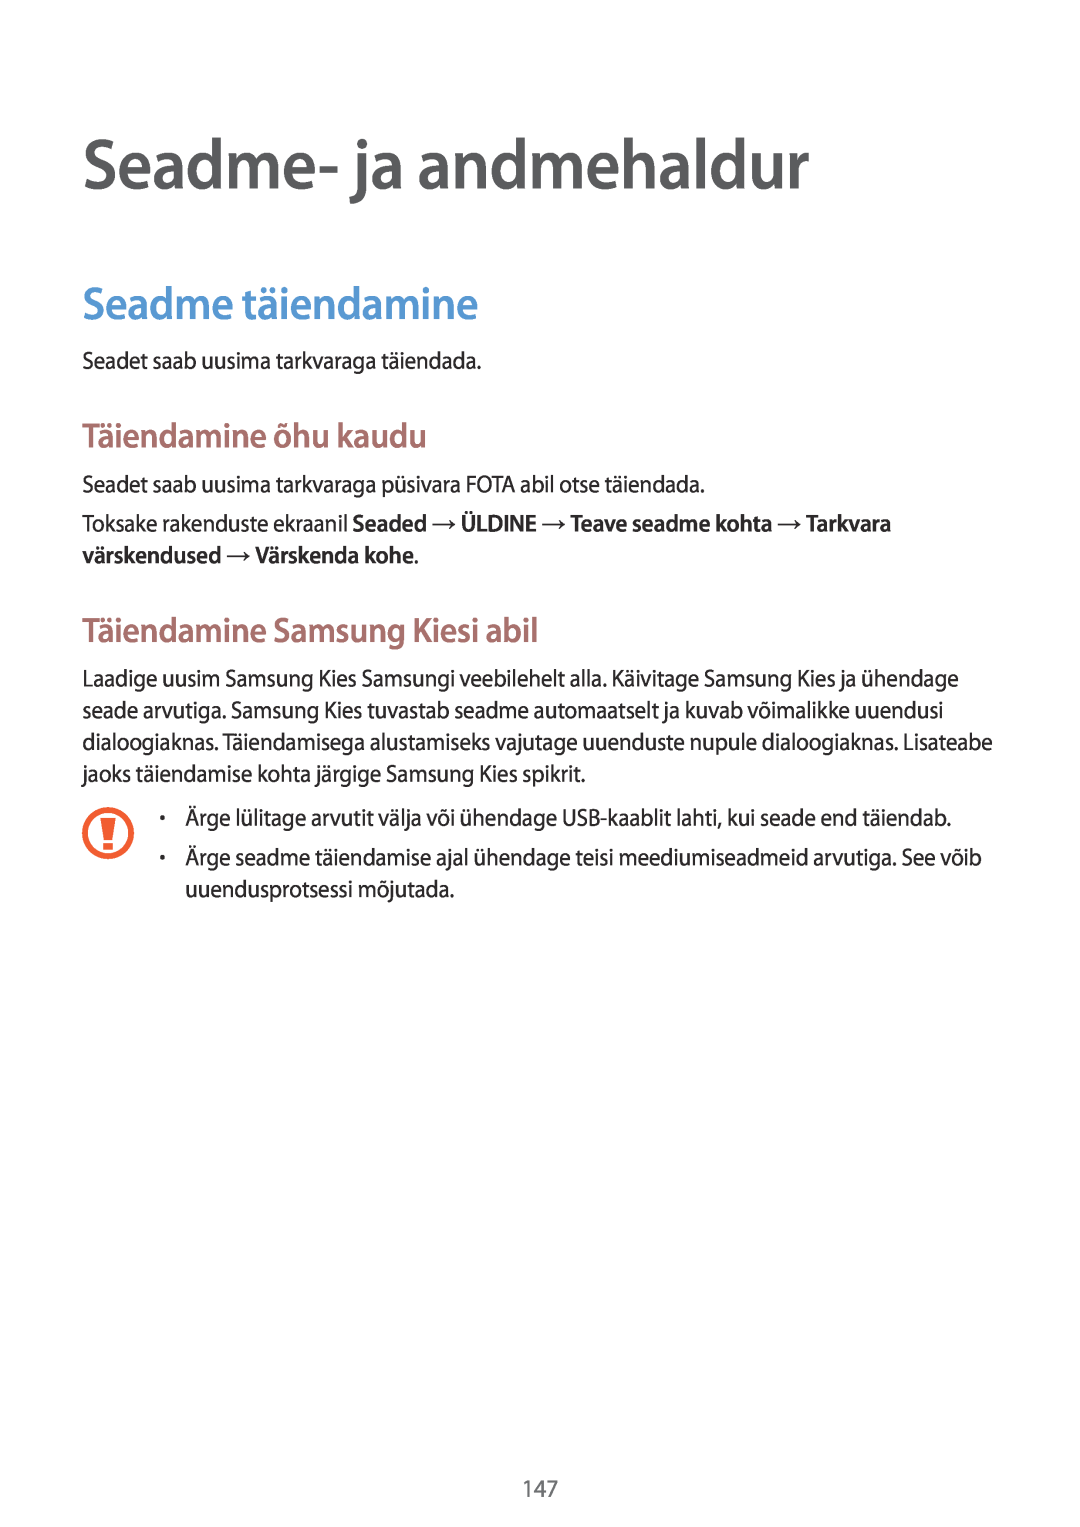 Samsung SM-T700NTSASEB Seadme- ja andmehaldur, Seadme täiendamine, Täiendamine õhu kaudu, Täiendamine Samsung Kiesi abil 